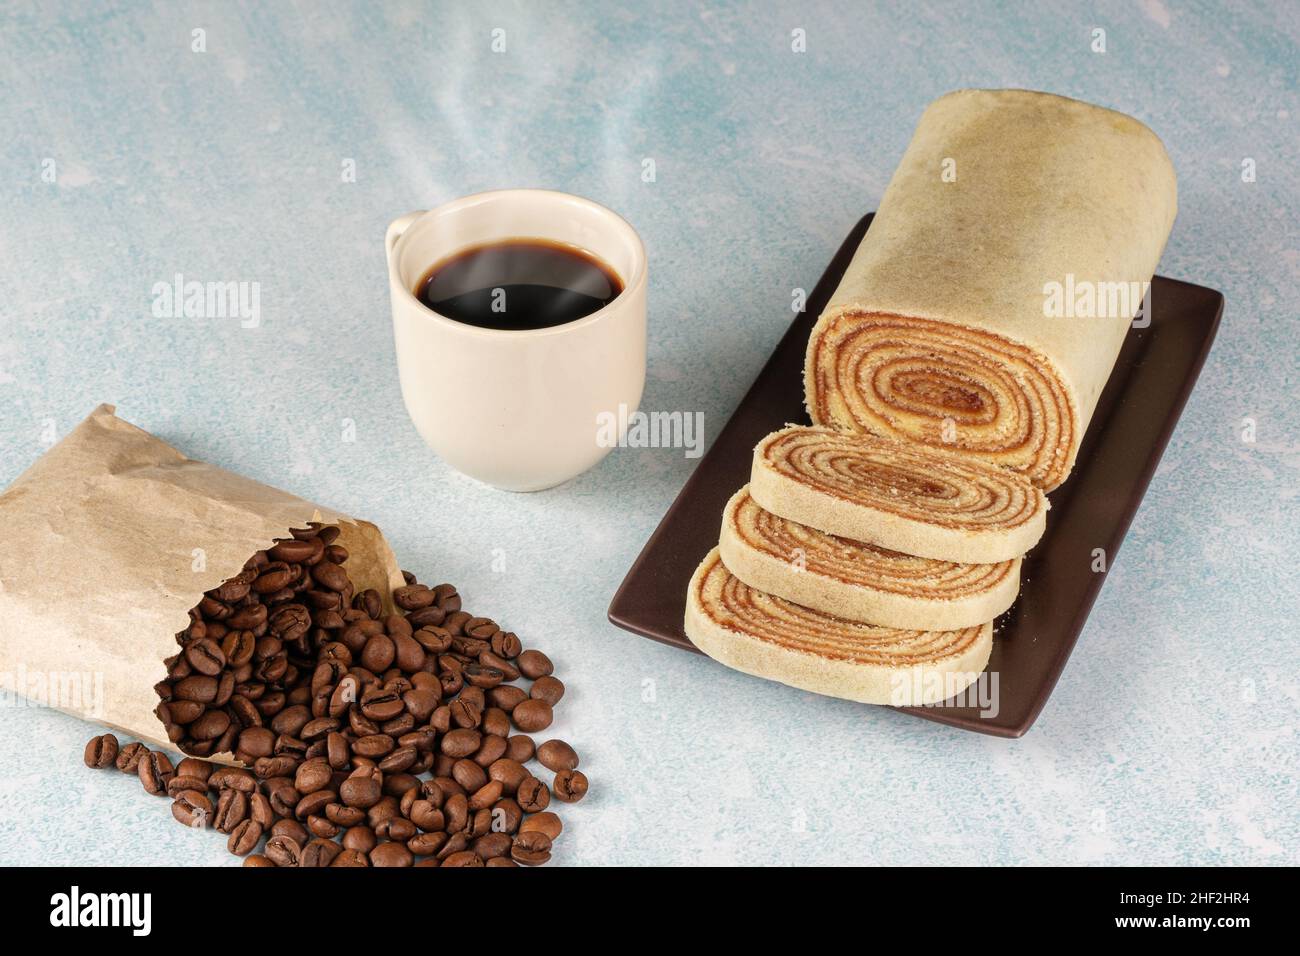 In Scheiben geschnittener Bolo de rolo (Rollkuchen) neben Bohnen und Kaffeetasse. Stockfoto